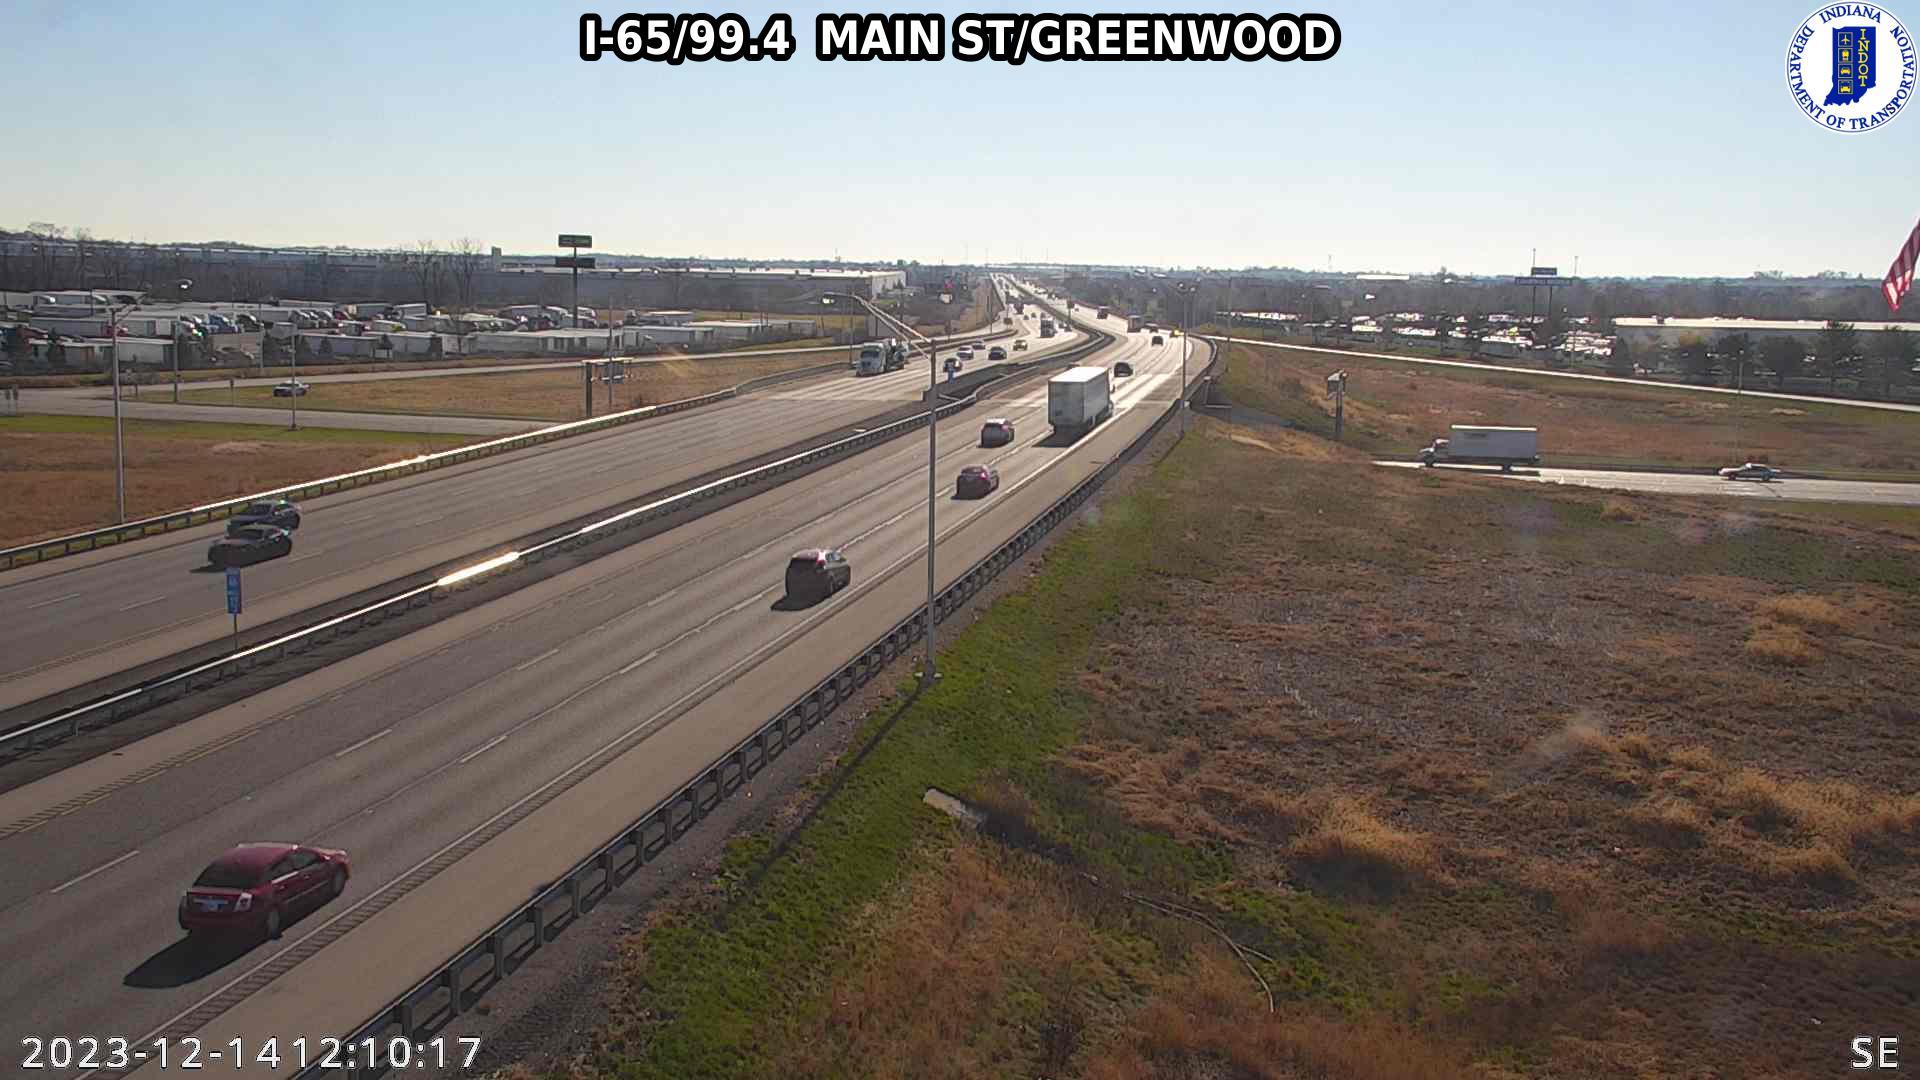 Traffic Cam Greenwood: I-65: I-65/99.4 MAIN ST - I-65/99.4 MAIN ST Player